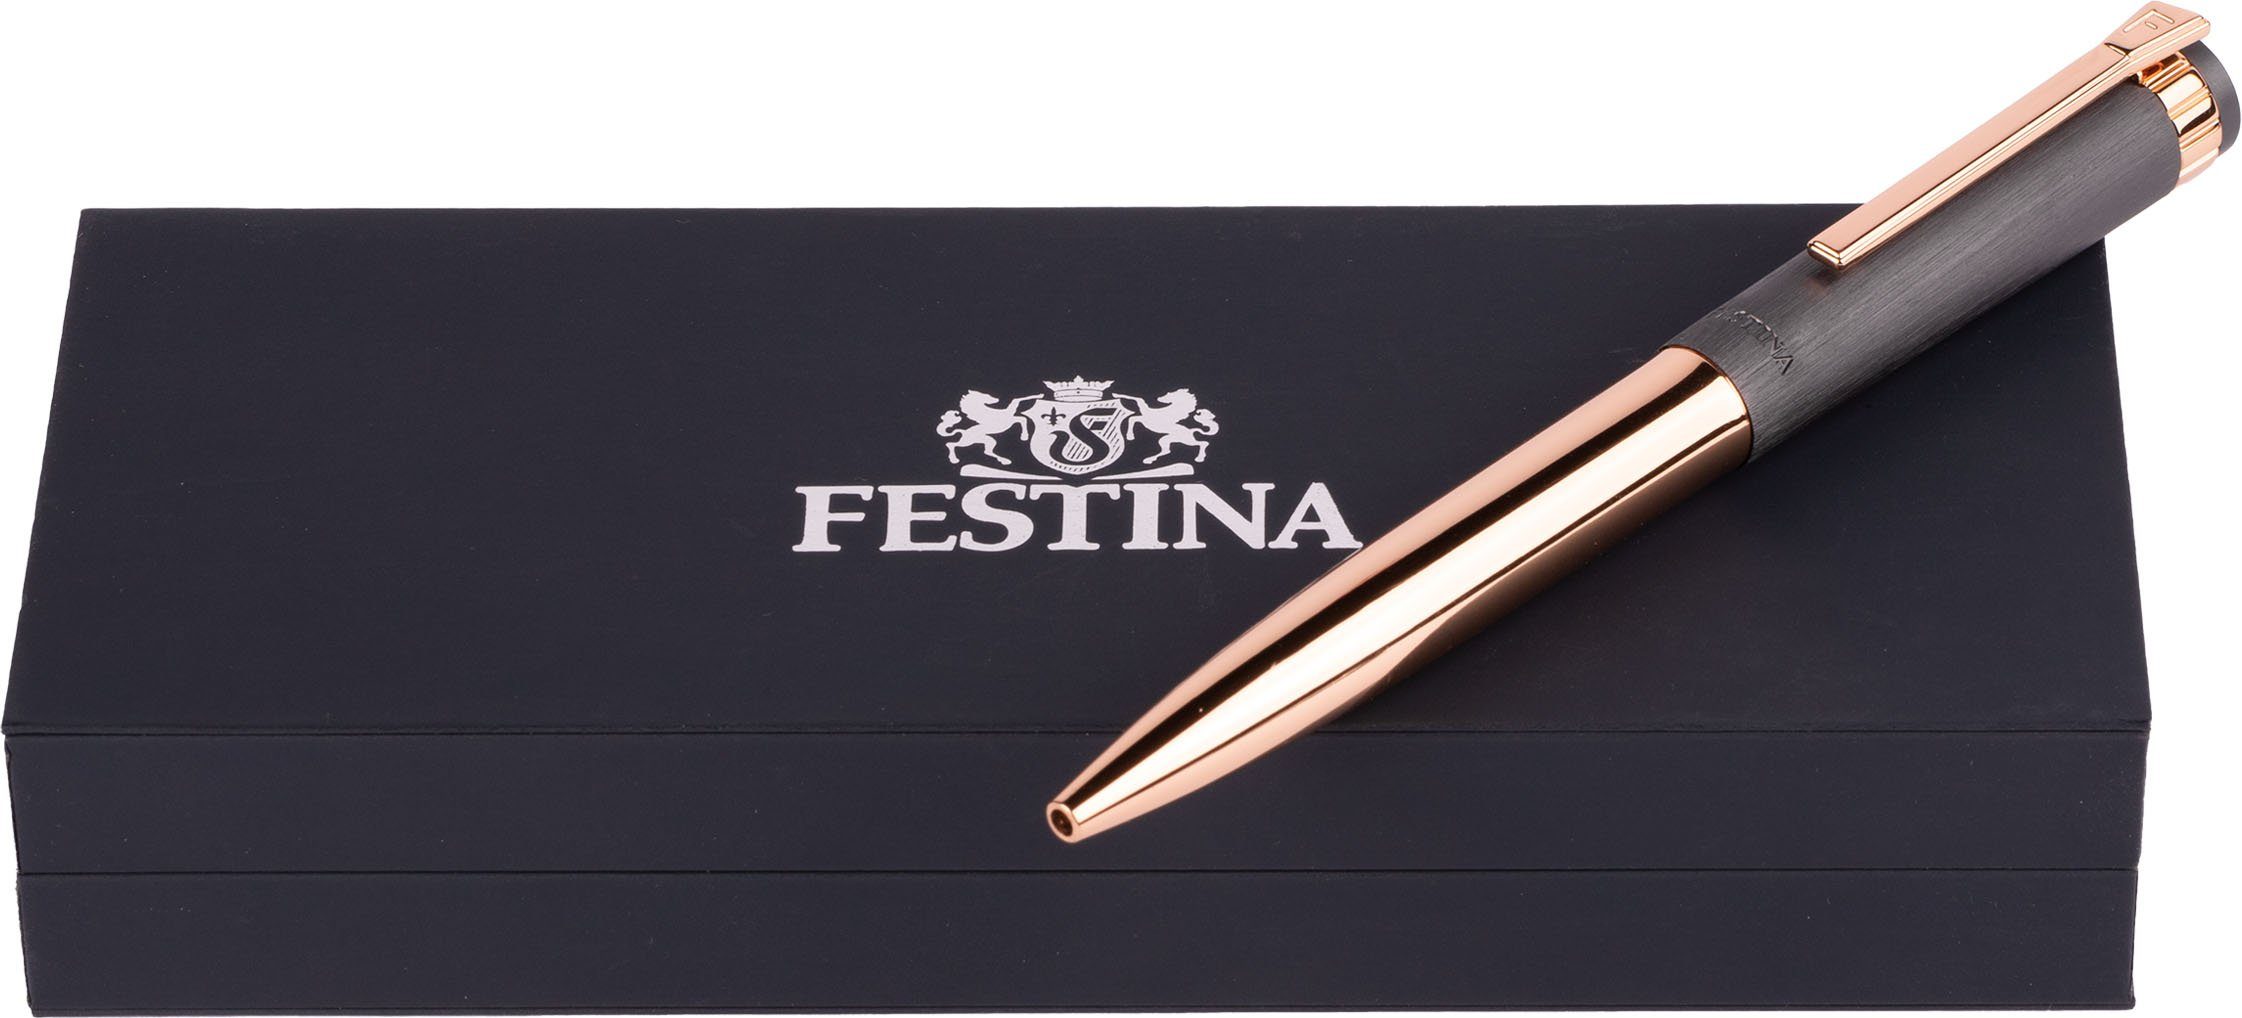 FWS4107/D, Prestige, Kugelschreiber als ideal Festina Etui, Geschenk auch inklusive